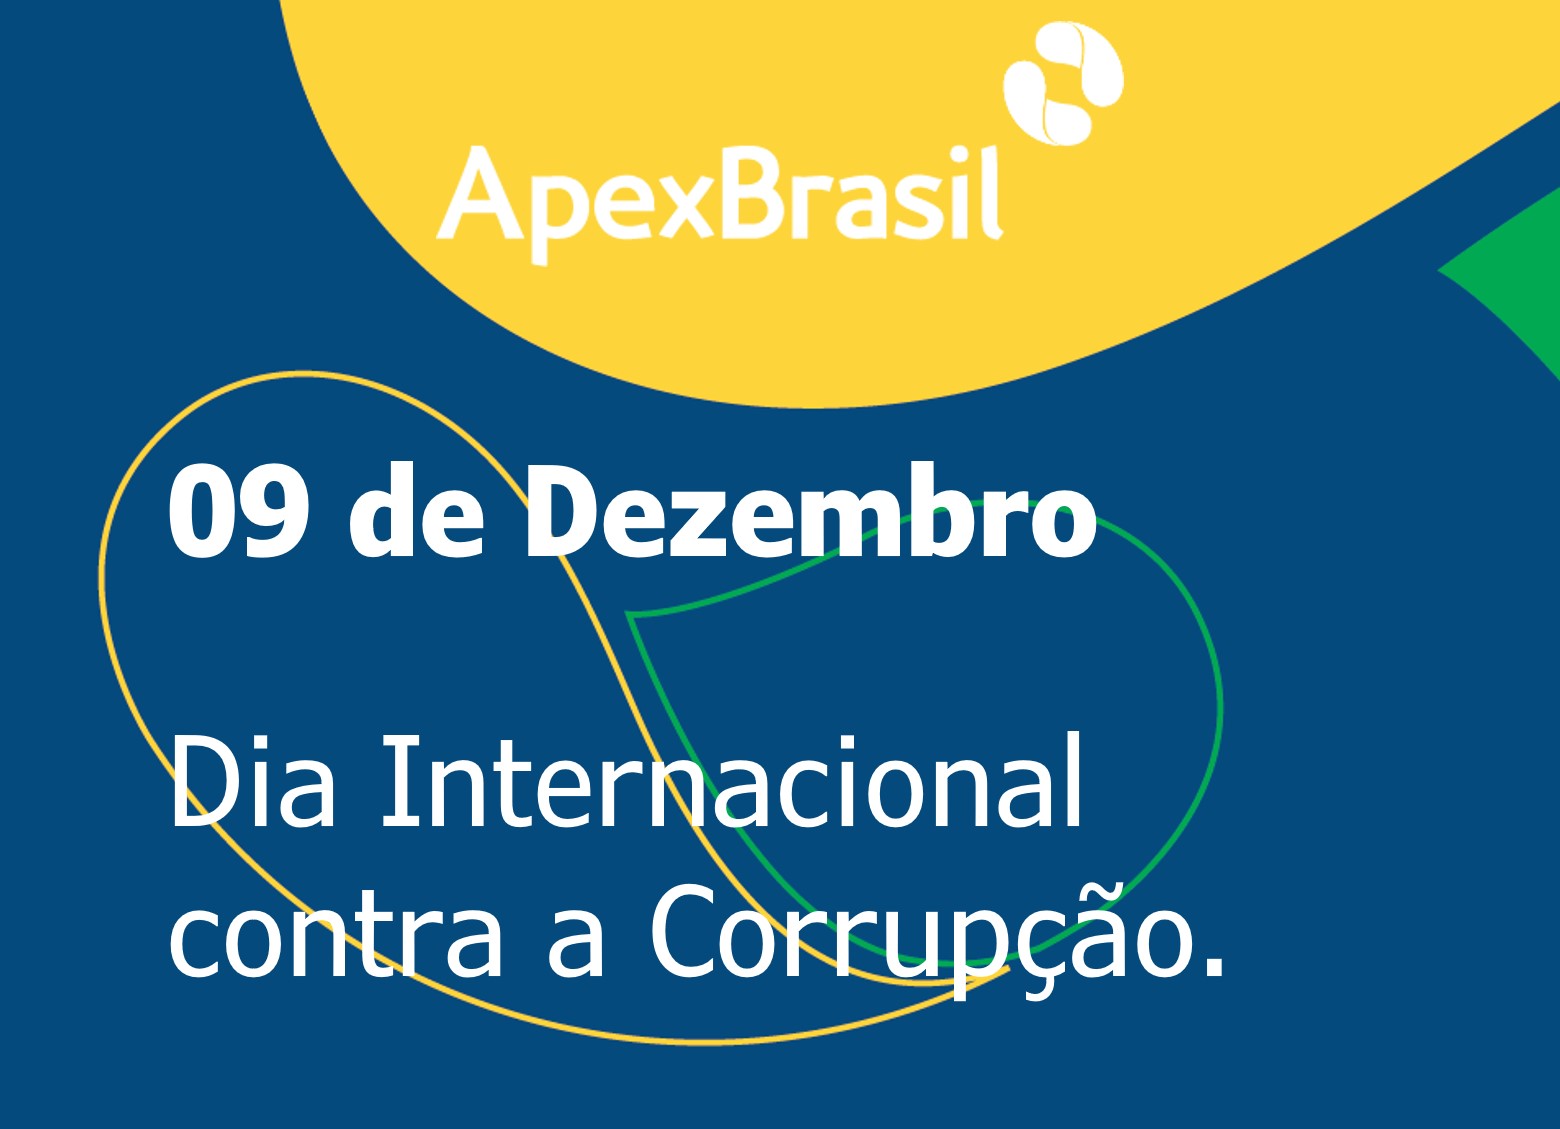 Apex-Brasil reafirma compromisso com o combate à corrupção